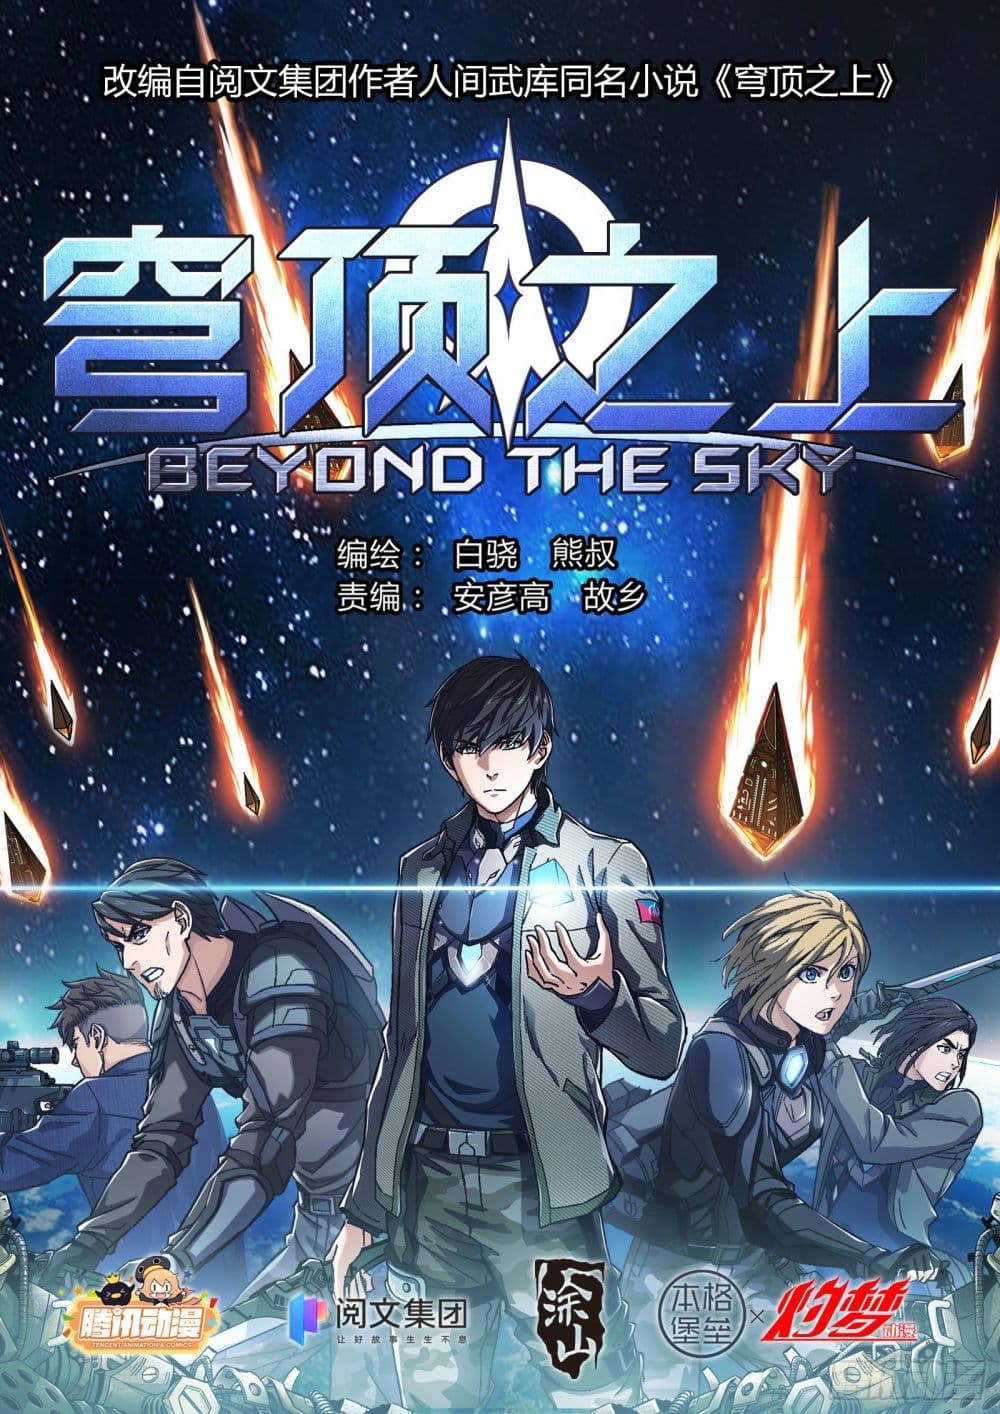 Beyond The Sky 14 (1)